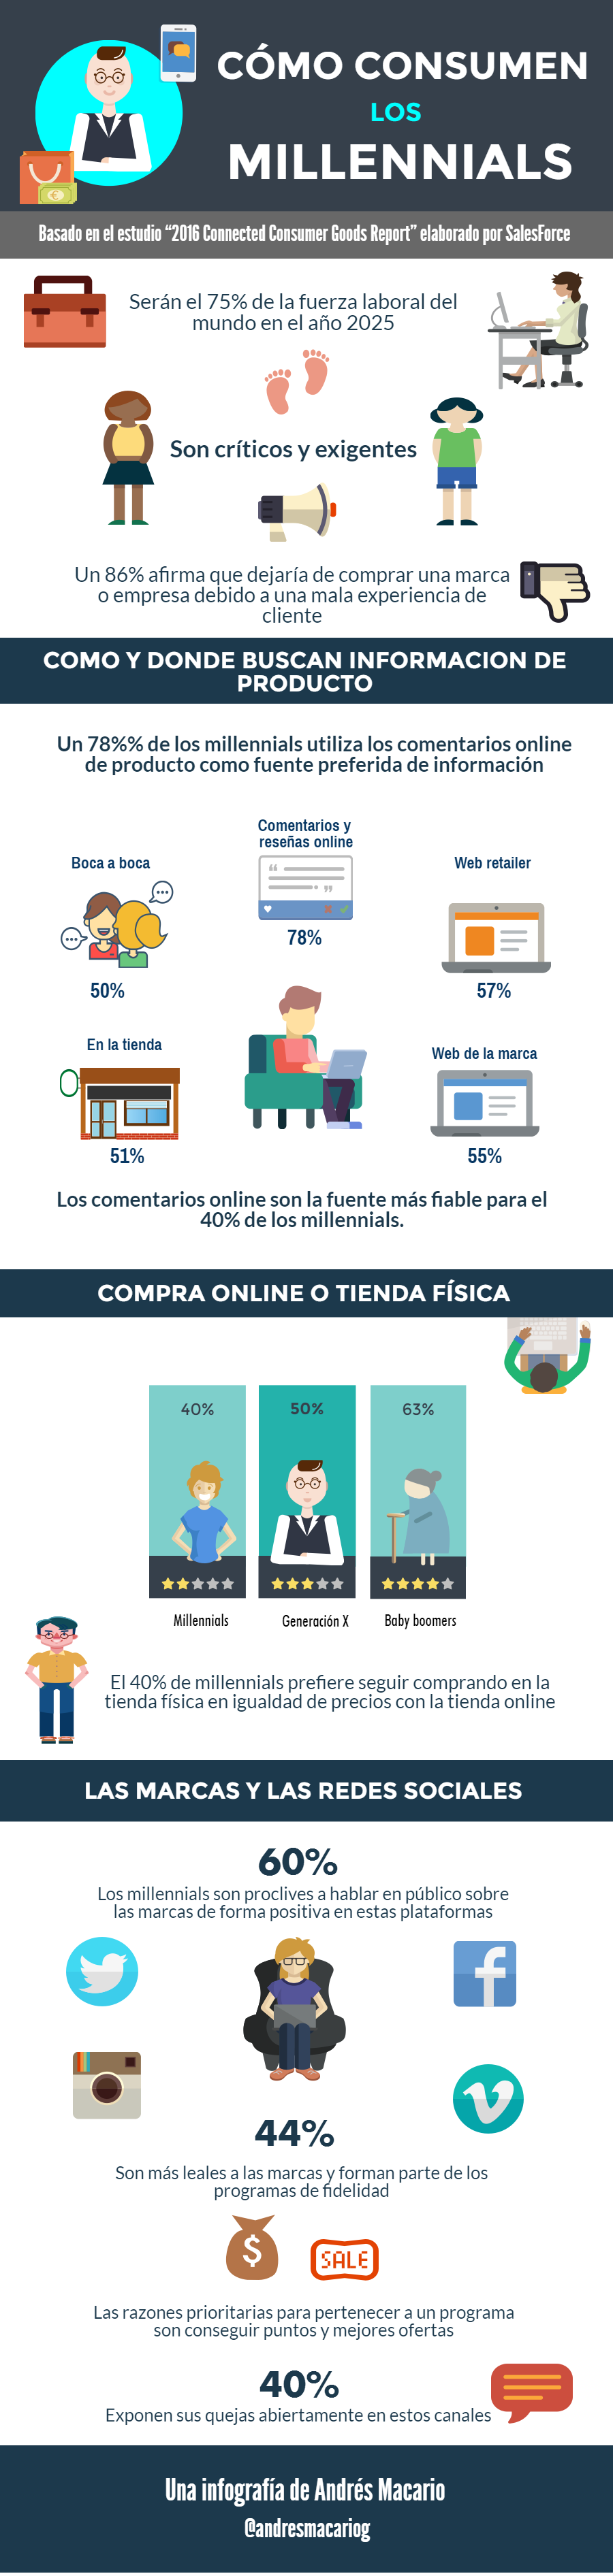 Cómo consumen los millennials - Infografia Andres Macario